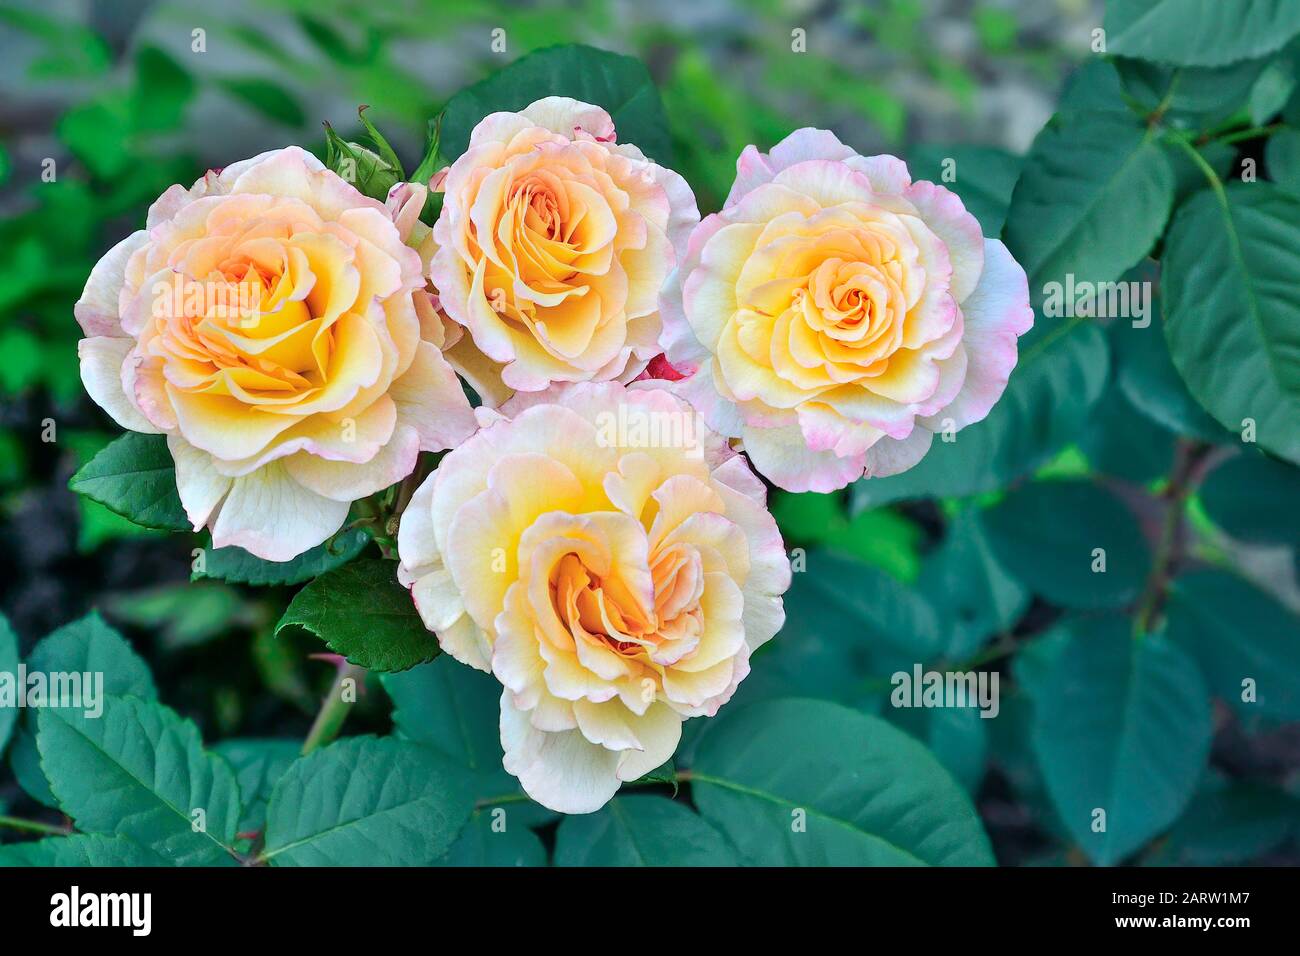 Rosafarbene Rosenblüten blühen im Garten dicht auf. Schöne zarte Blumen mit Knospen auf unscharfen grünen Blättern Hintergrund. Gartenarbeit, Florisch Stockfoto